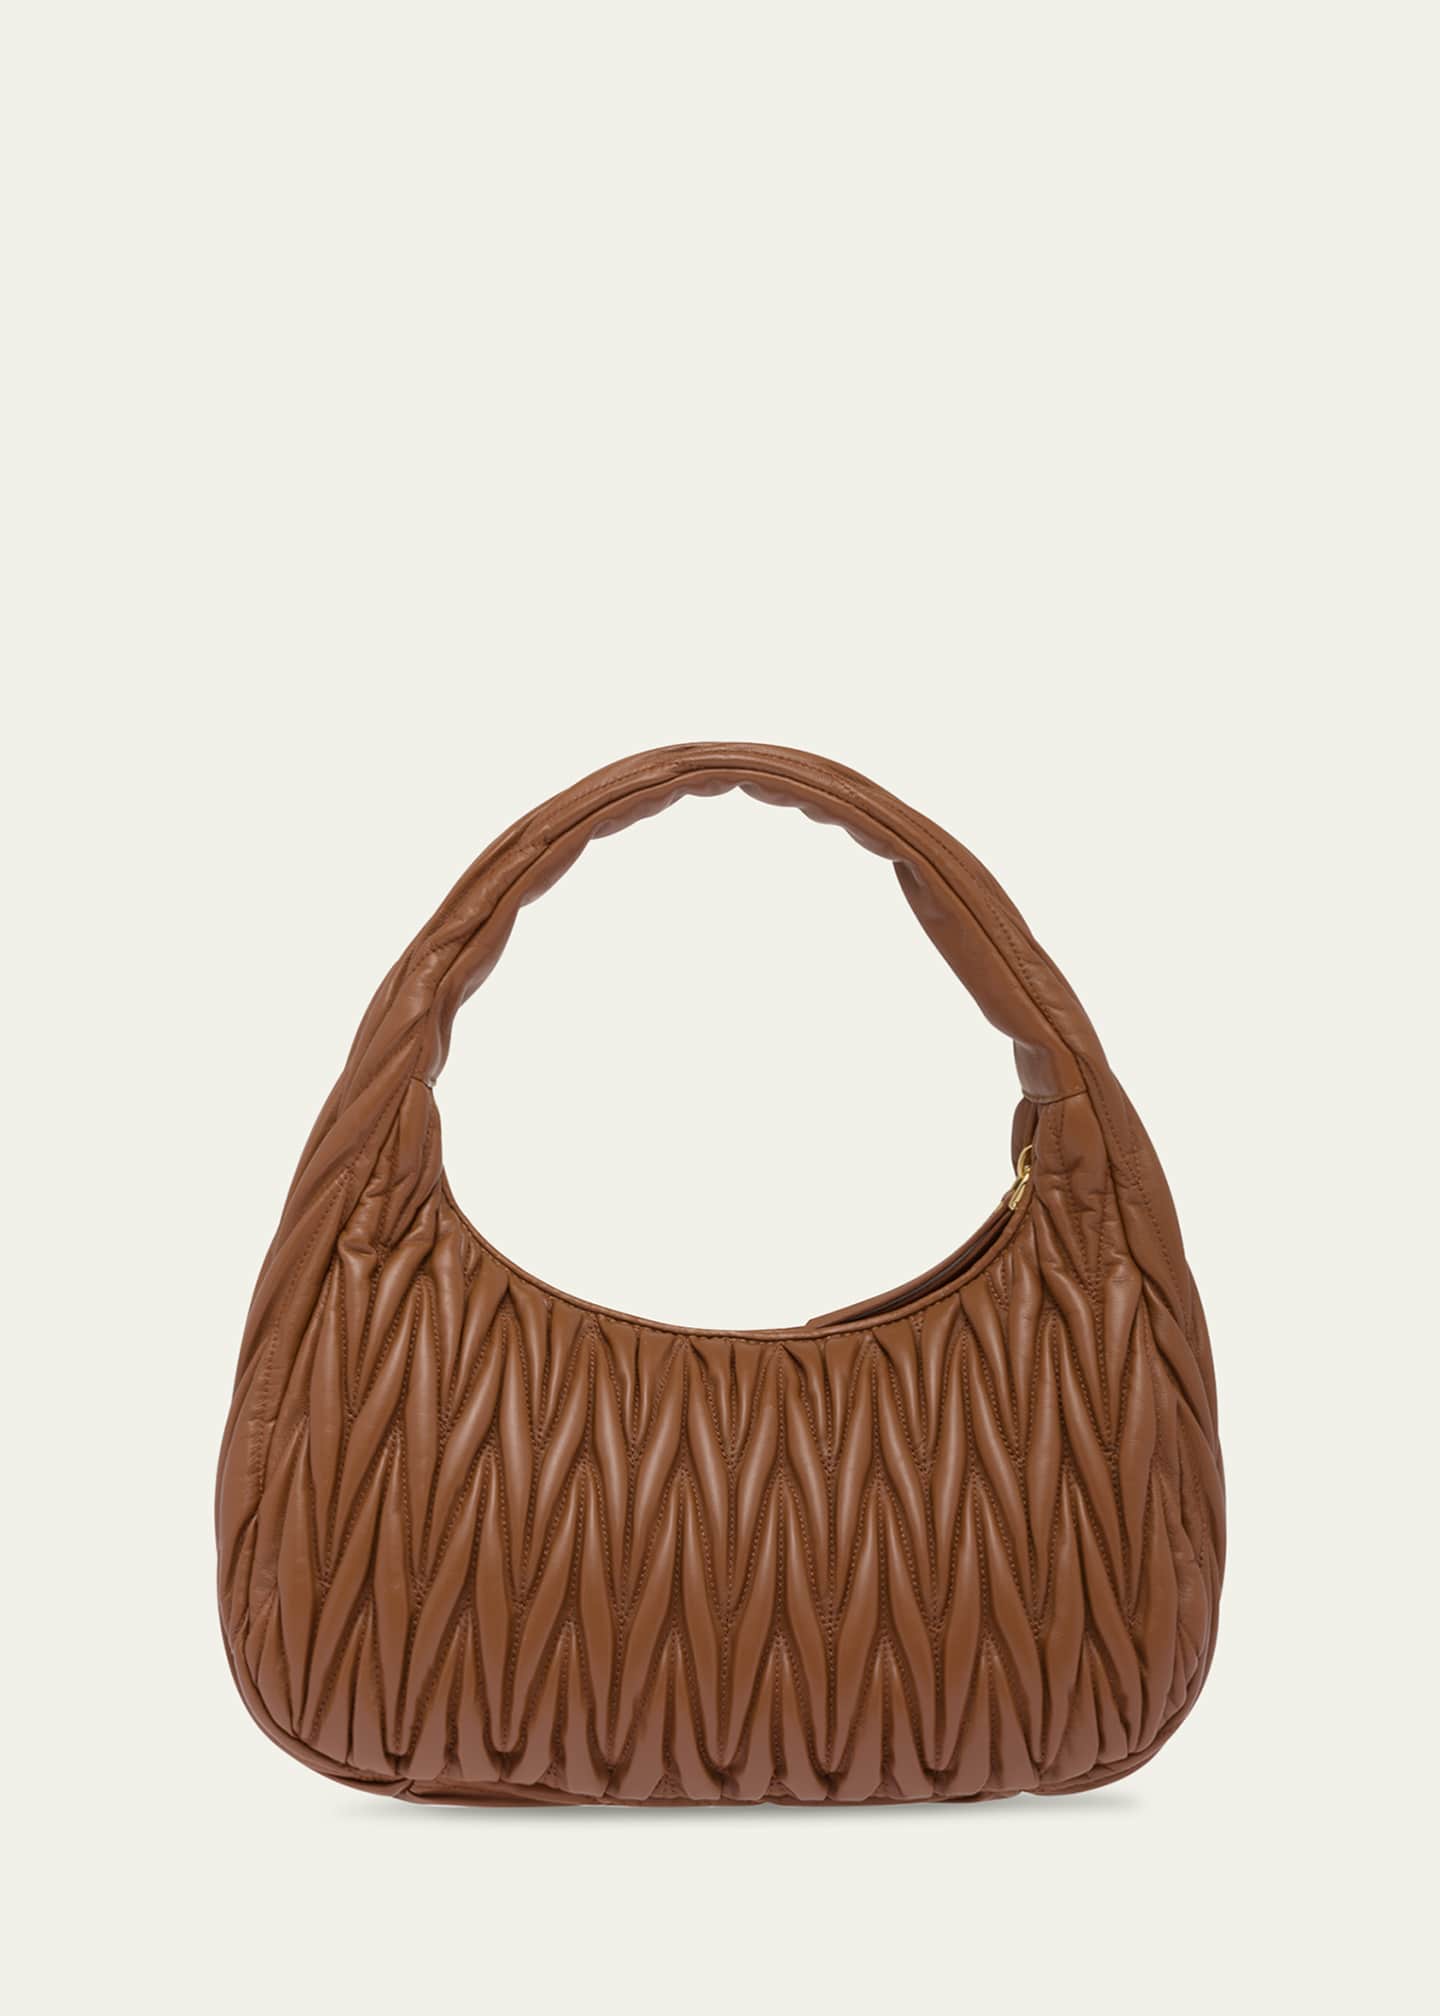 Miu Miu Bags : Shoulder Bags at Bergdorf Goodman